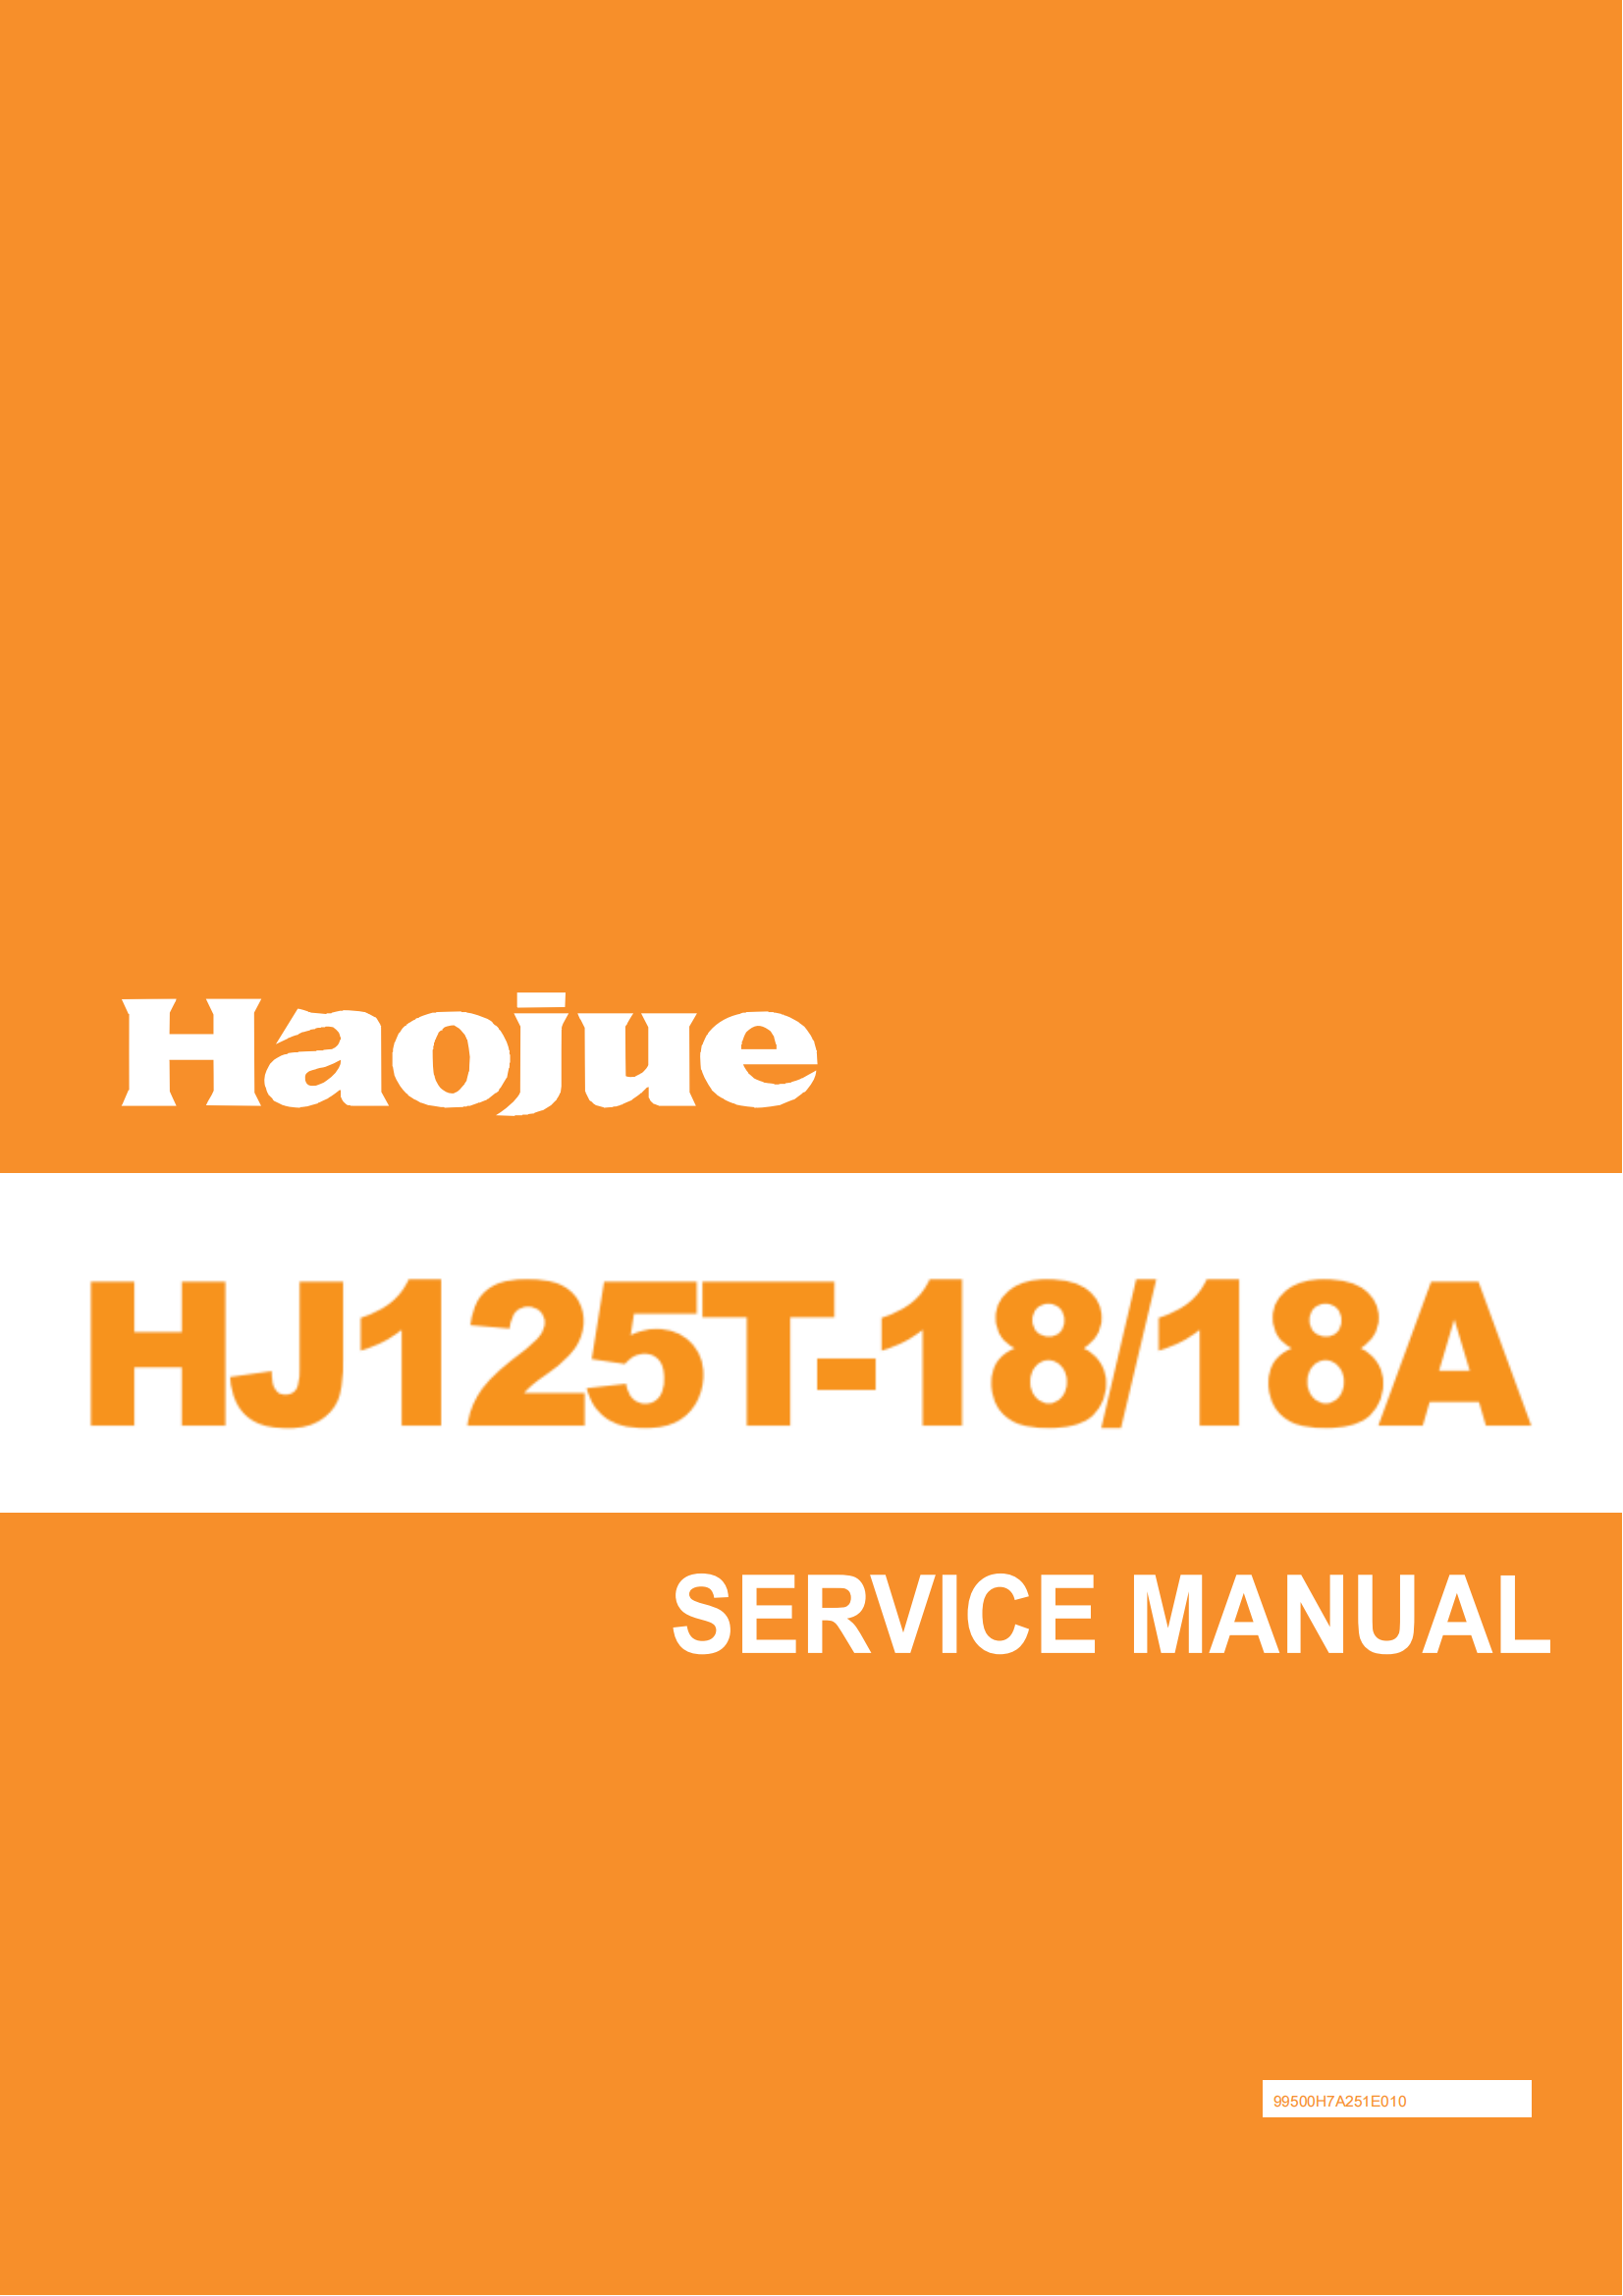 原版葡萄牙文2013年豪爵灵迪维修手册HJ125T-18 HT125T-18A维修手册插图